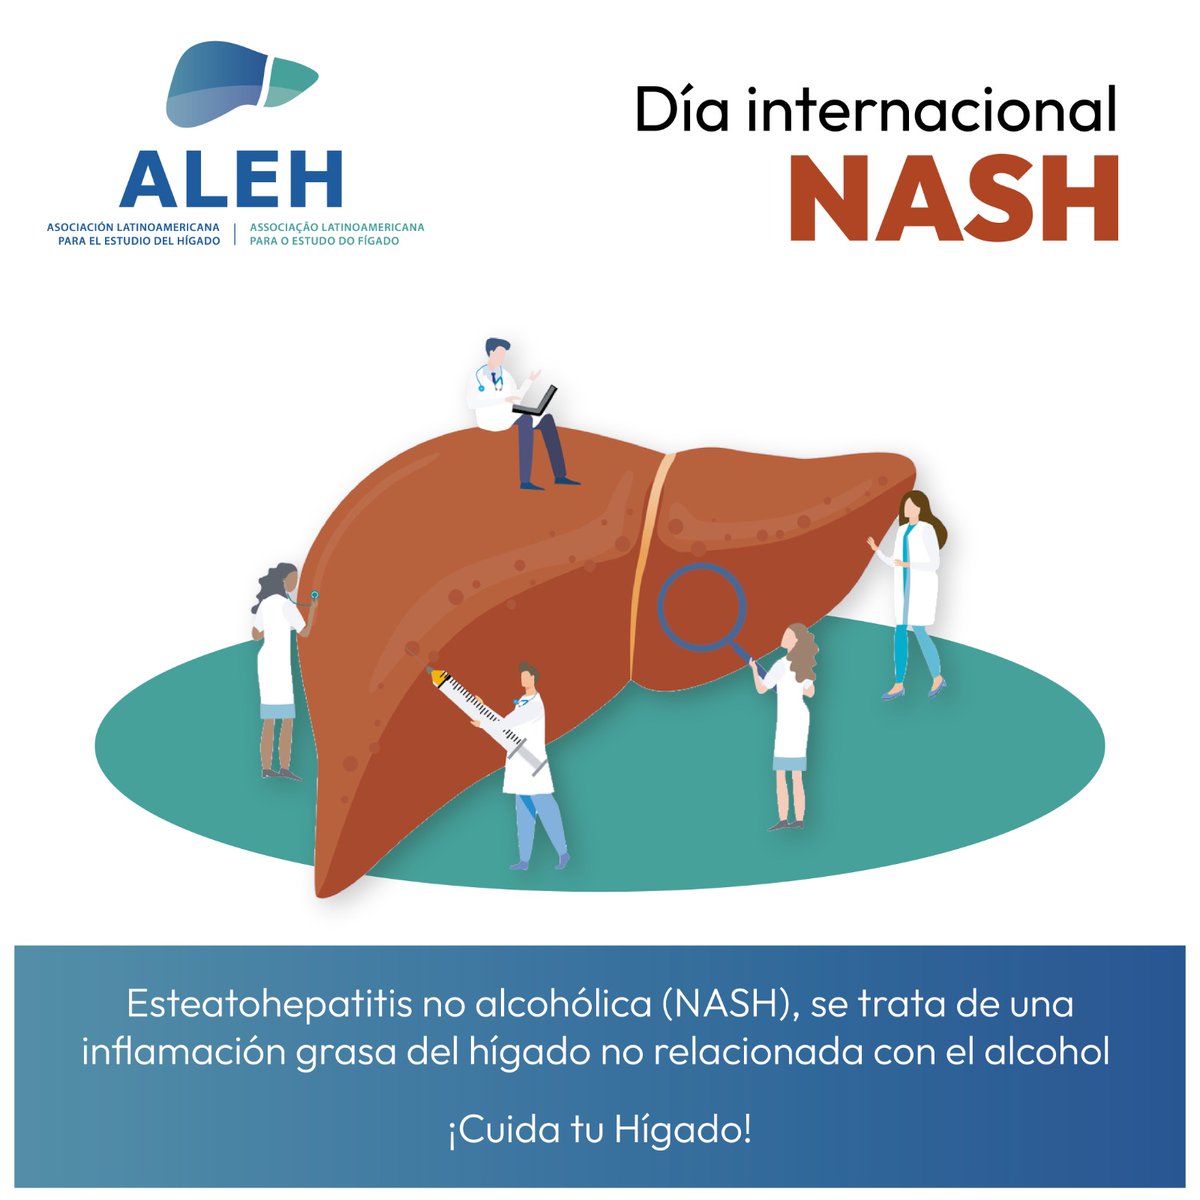 Día Internacional de #NASH 

#ALEH #NASHDAY